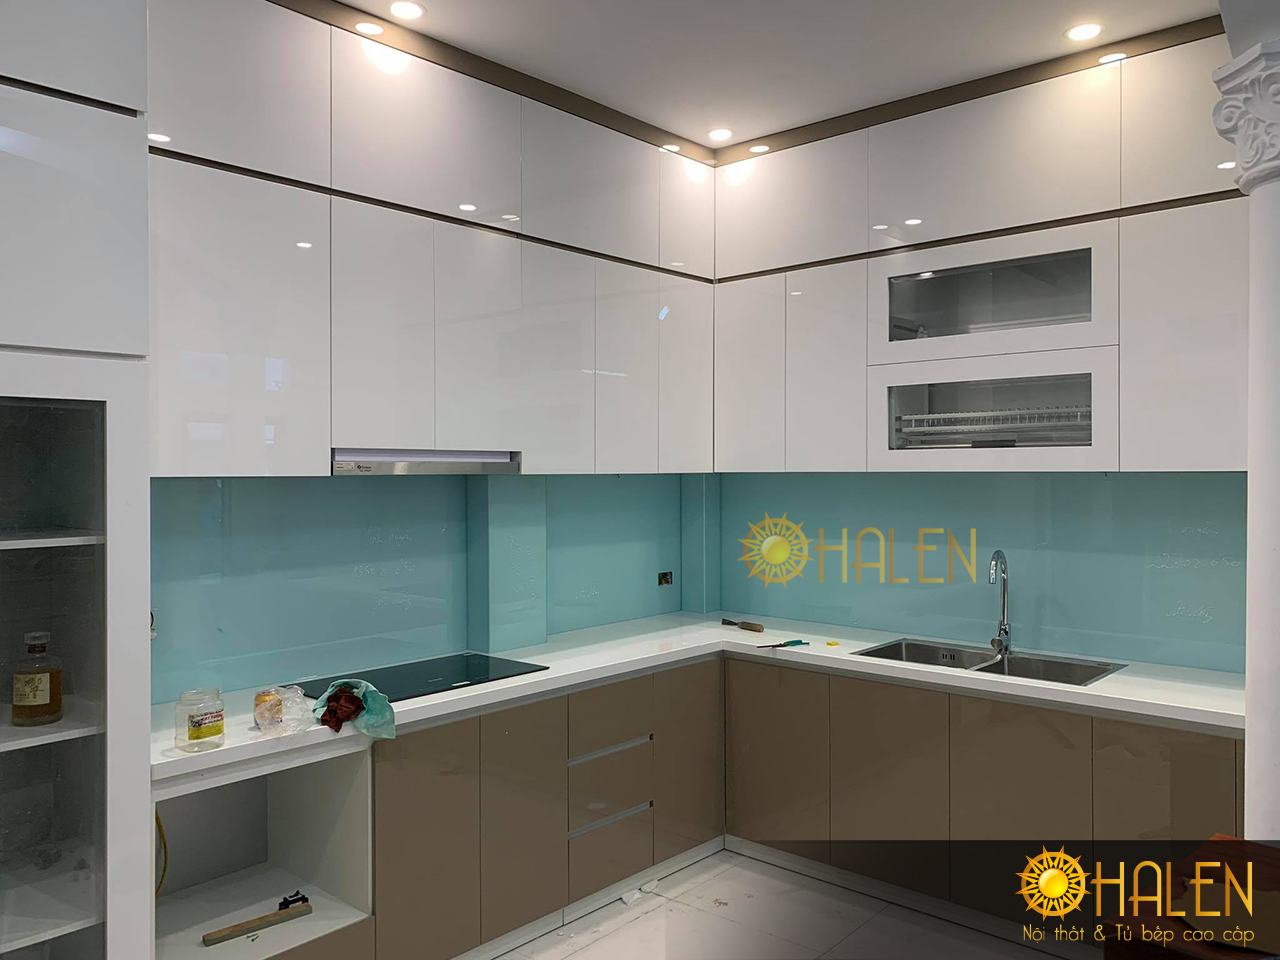 Với ưu điểm bề mặt nhẵn bóng, vật liệu Acrylic được sử dụng rộng dãi làm tủ bếp